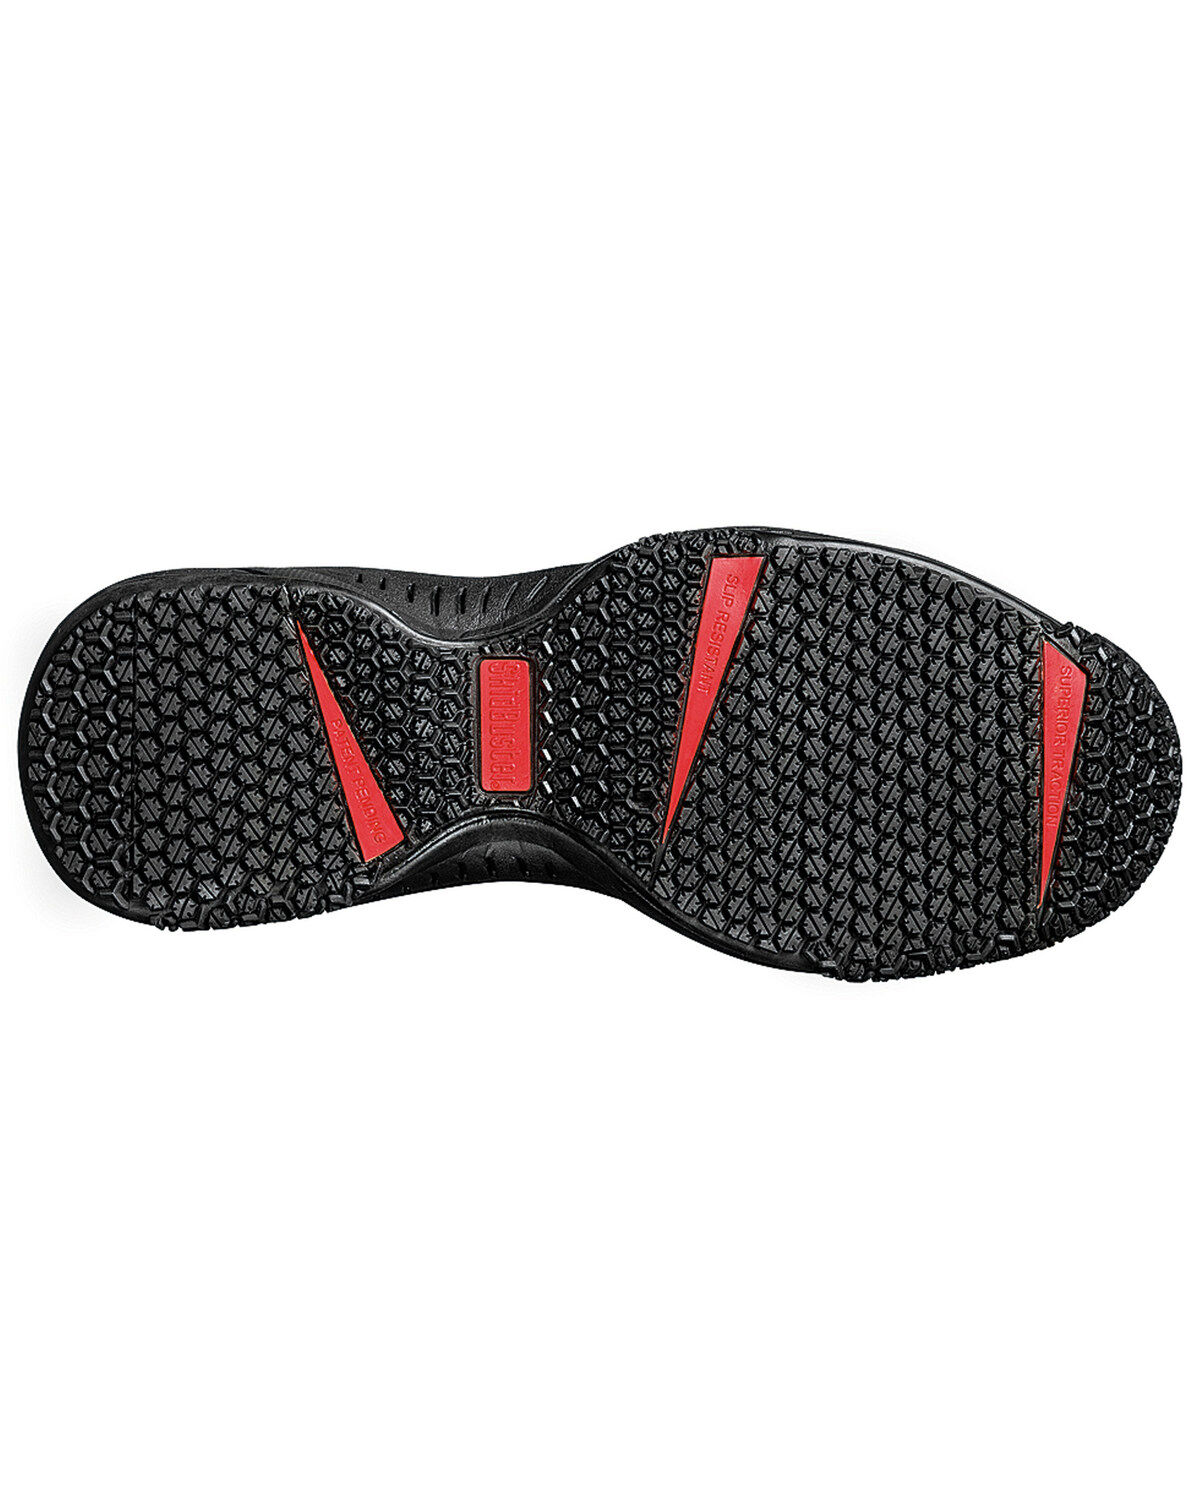 mens waterproof slip resistant work shoes